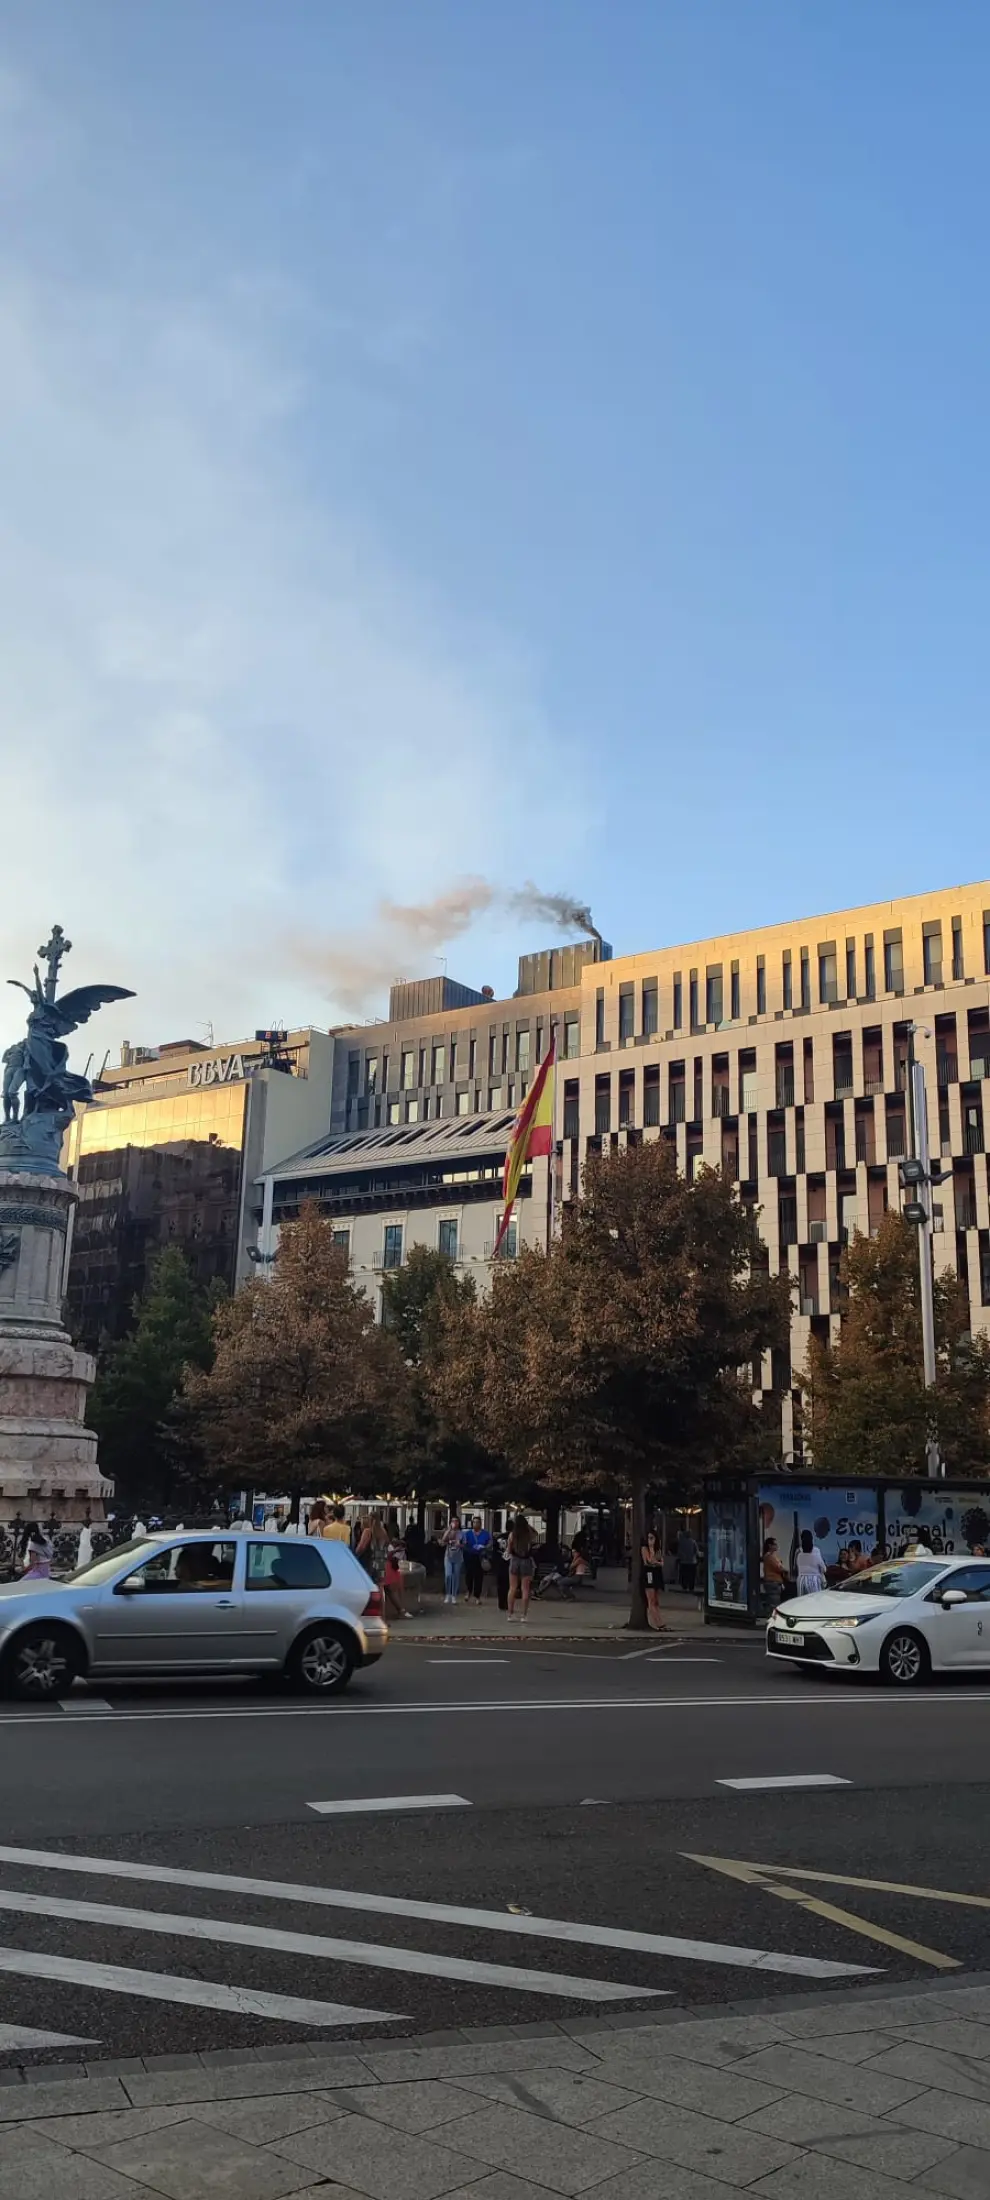 Incendio y fuerte humareda en la plaza de España de Zaragoza.